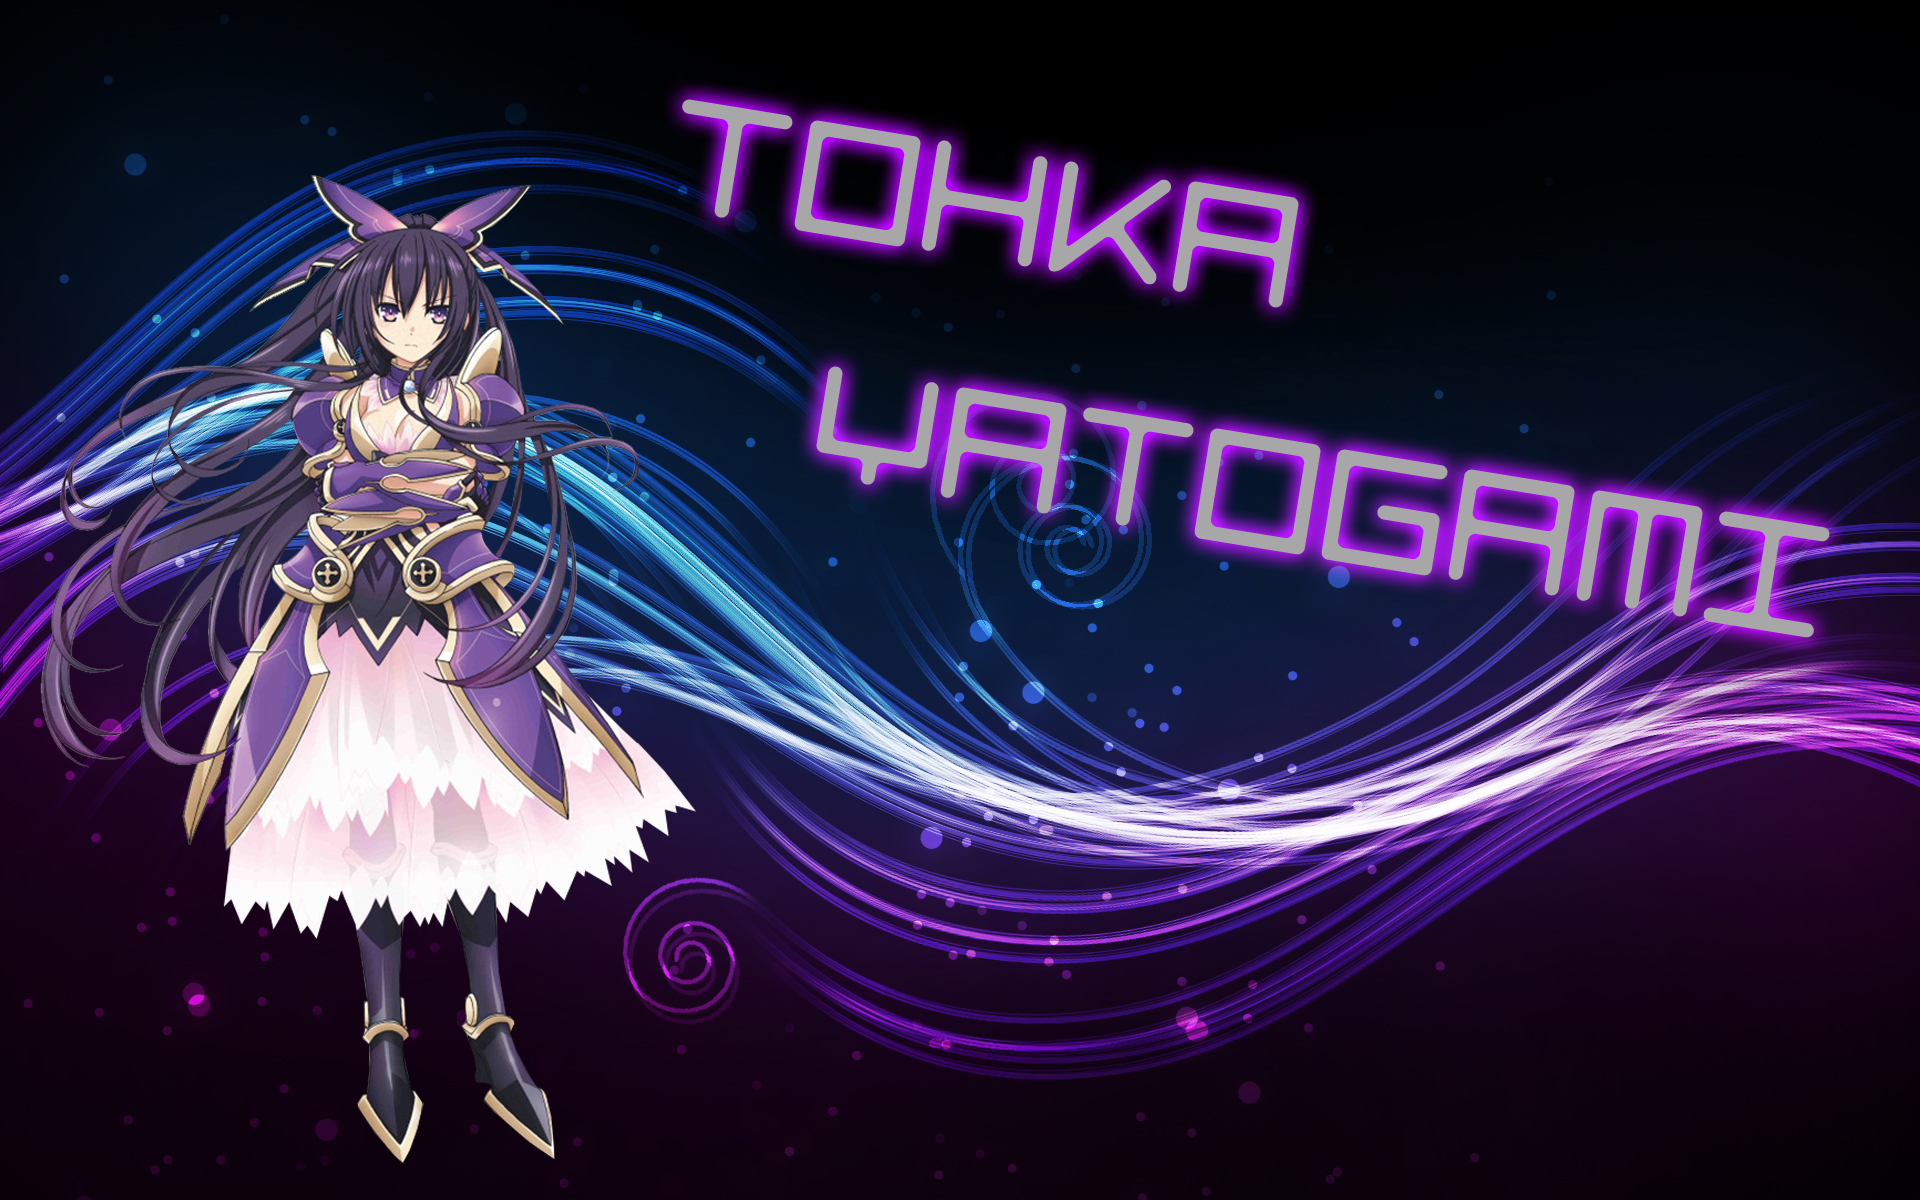 fond d'écran tohka yatogami,violet,violet,conception graphique,personnage fictif,graphique